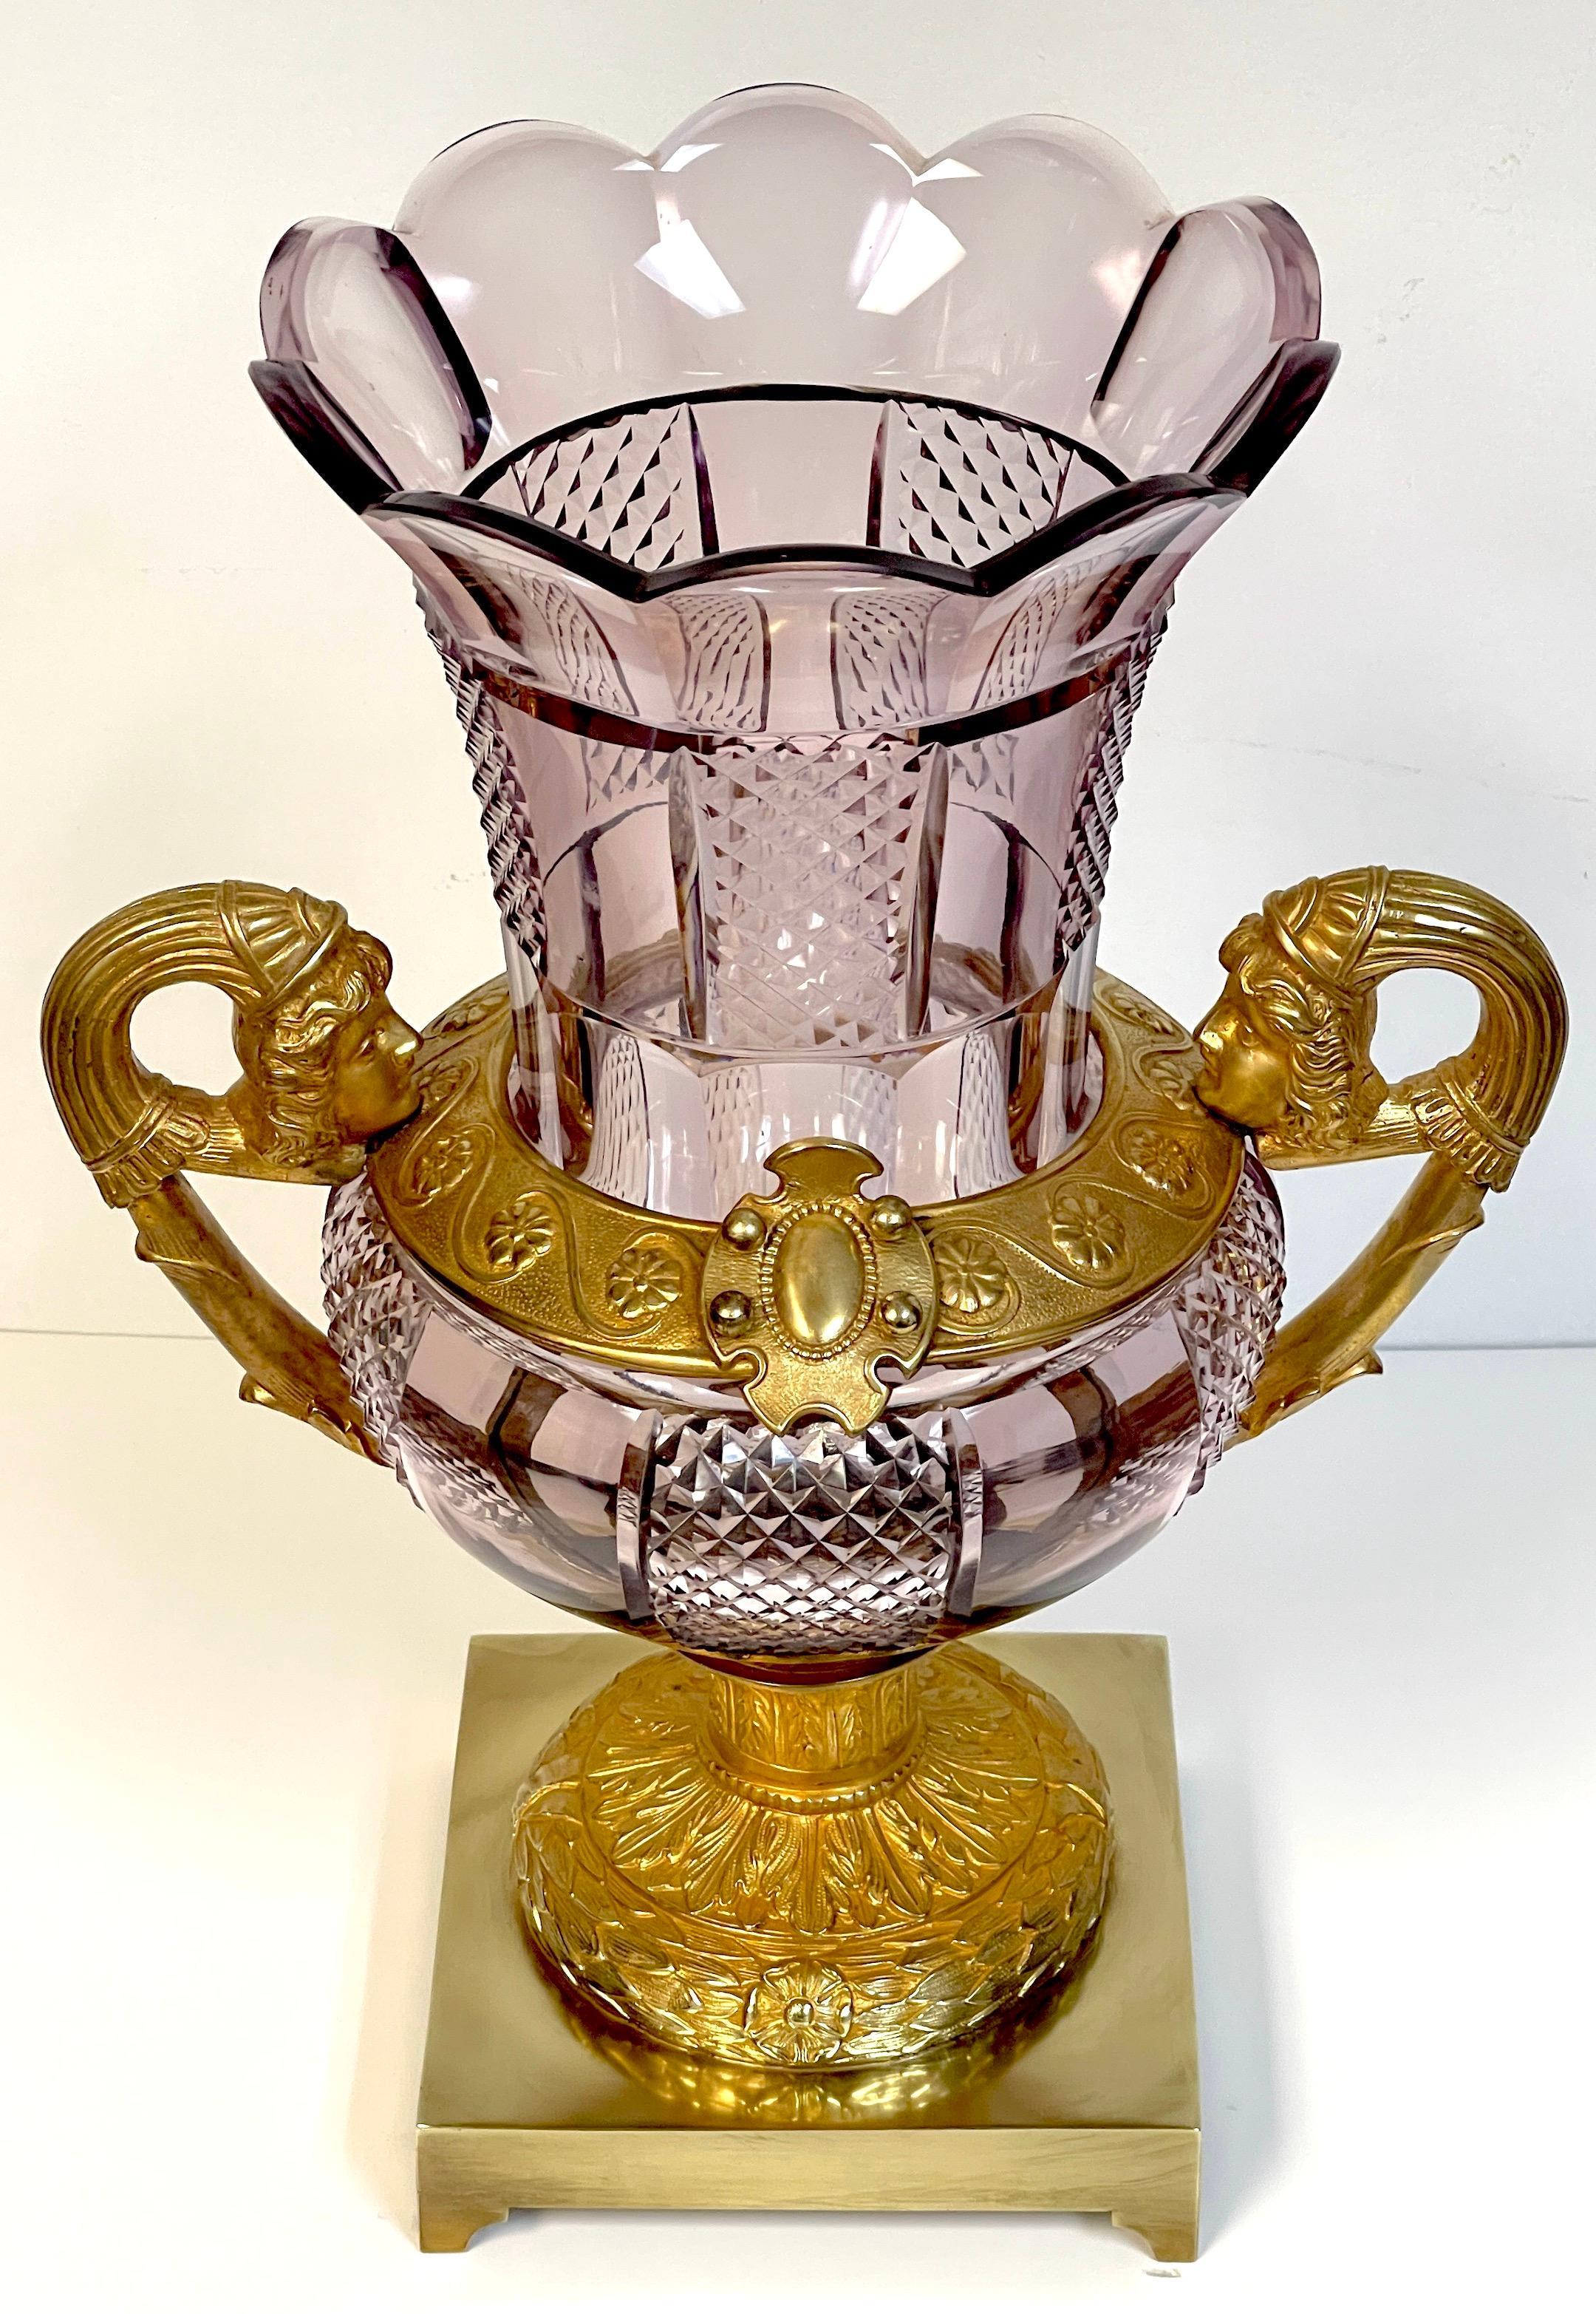 Grand vase russe néoclassique du XIXe siècle en bronze doré et verre taillé à l'améthyste
Saint-Pétersbourg, milieu du XIXe siècle 

Offrant un magnifique aperçu du néoclassicisme russe du XIXe siècle, ce grand et imposant vase provient de